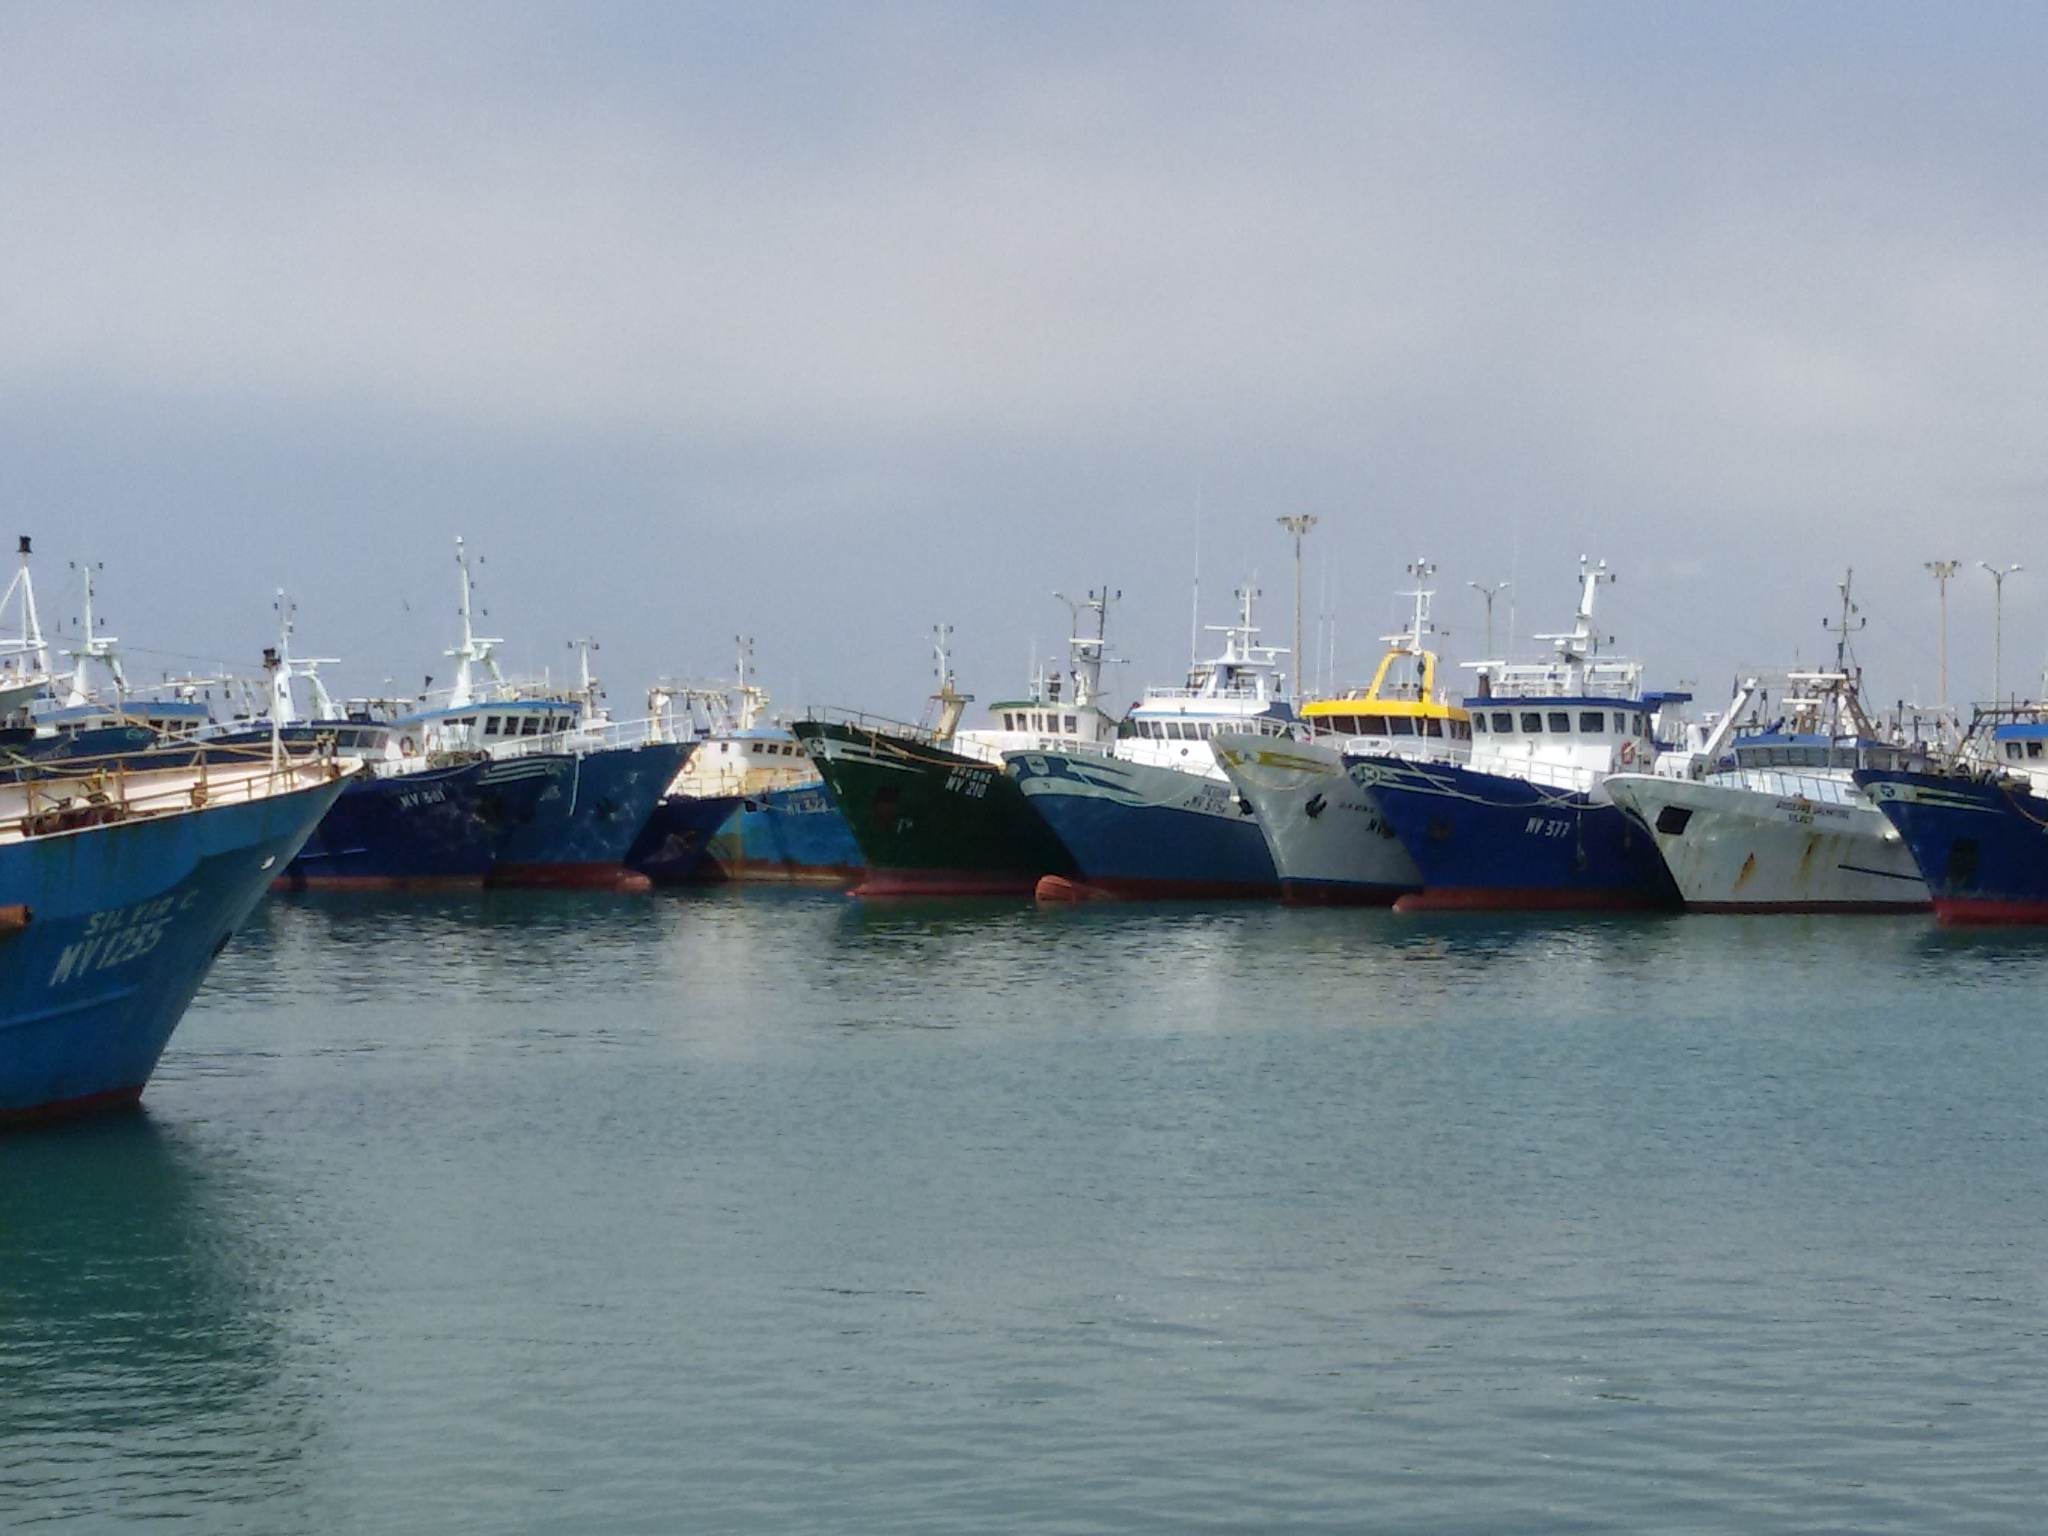 Pesca in Sicilia: arrivano 11 milioni. Arrivano sette bandi del Fondo europeo per gli affari marittimi